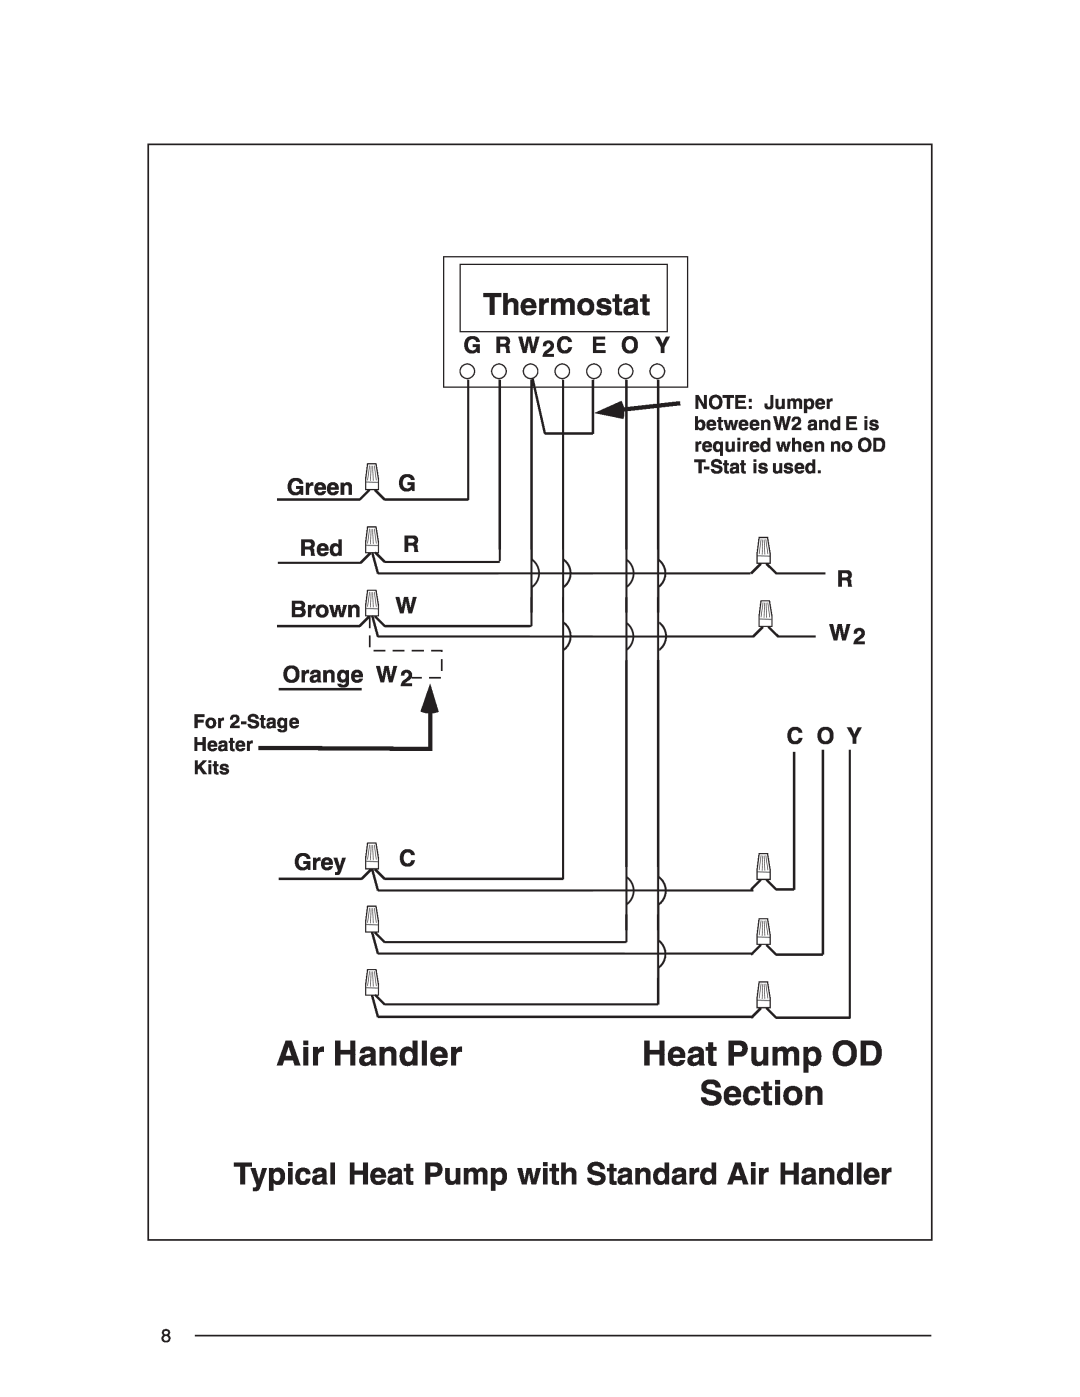 Nordyne R-410A Air Handler, Section, G R W 2C, E O Y, Green, Brown, Orange W, C O Y, Grey, Heat Pump OD, Thermostat 